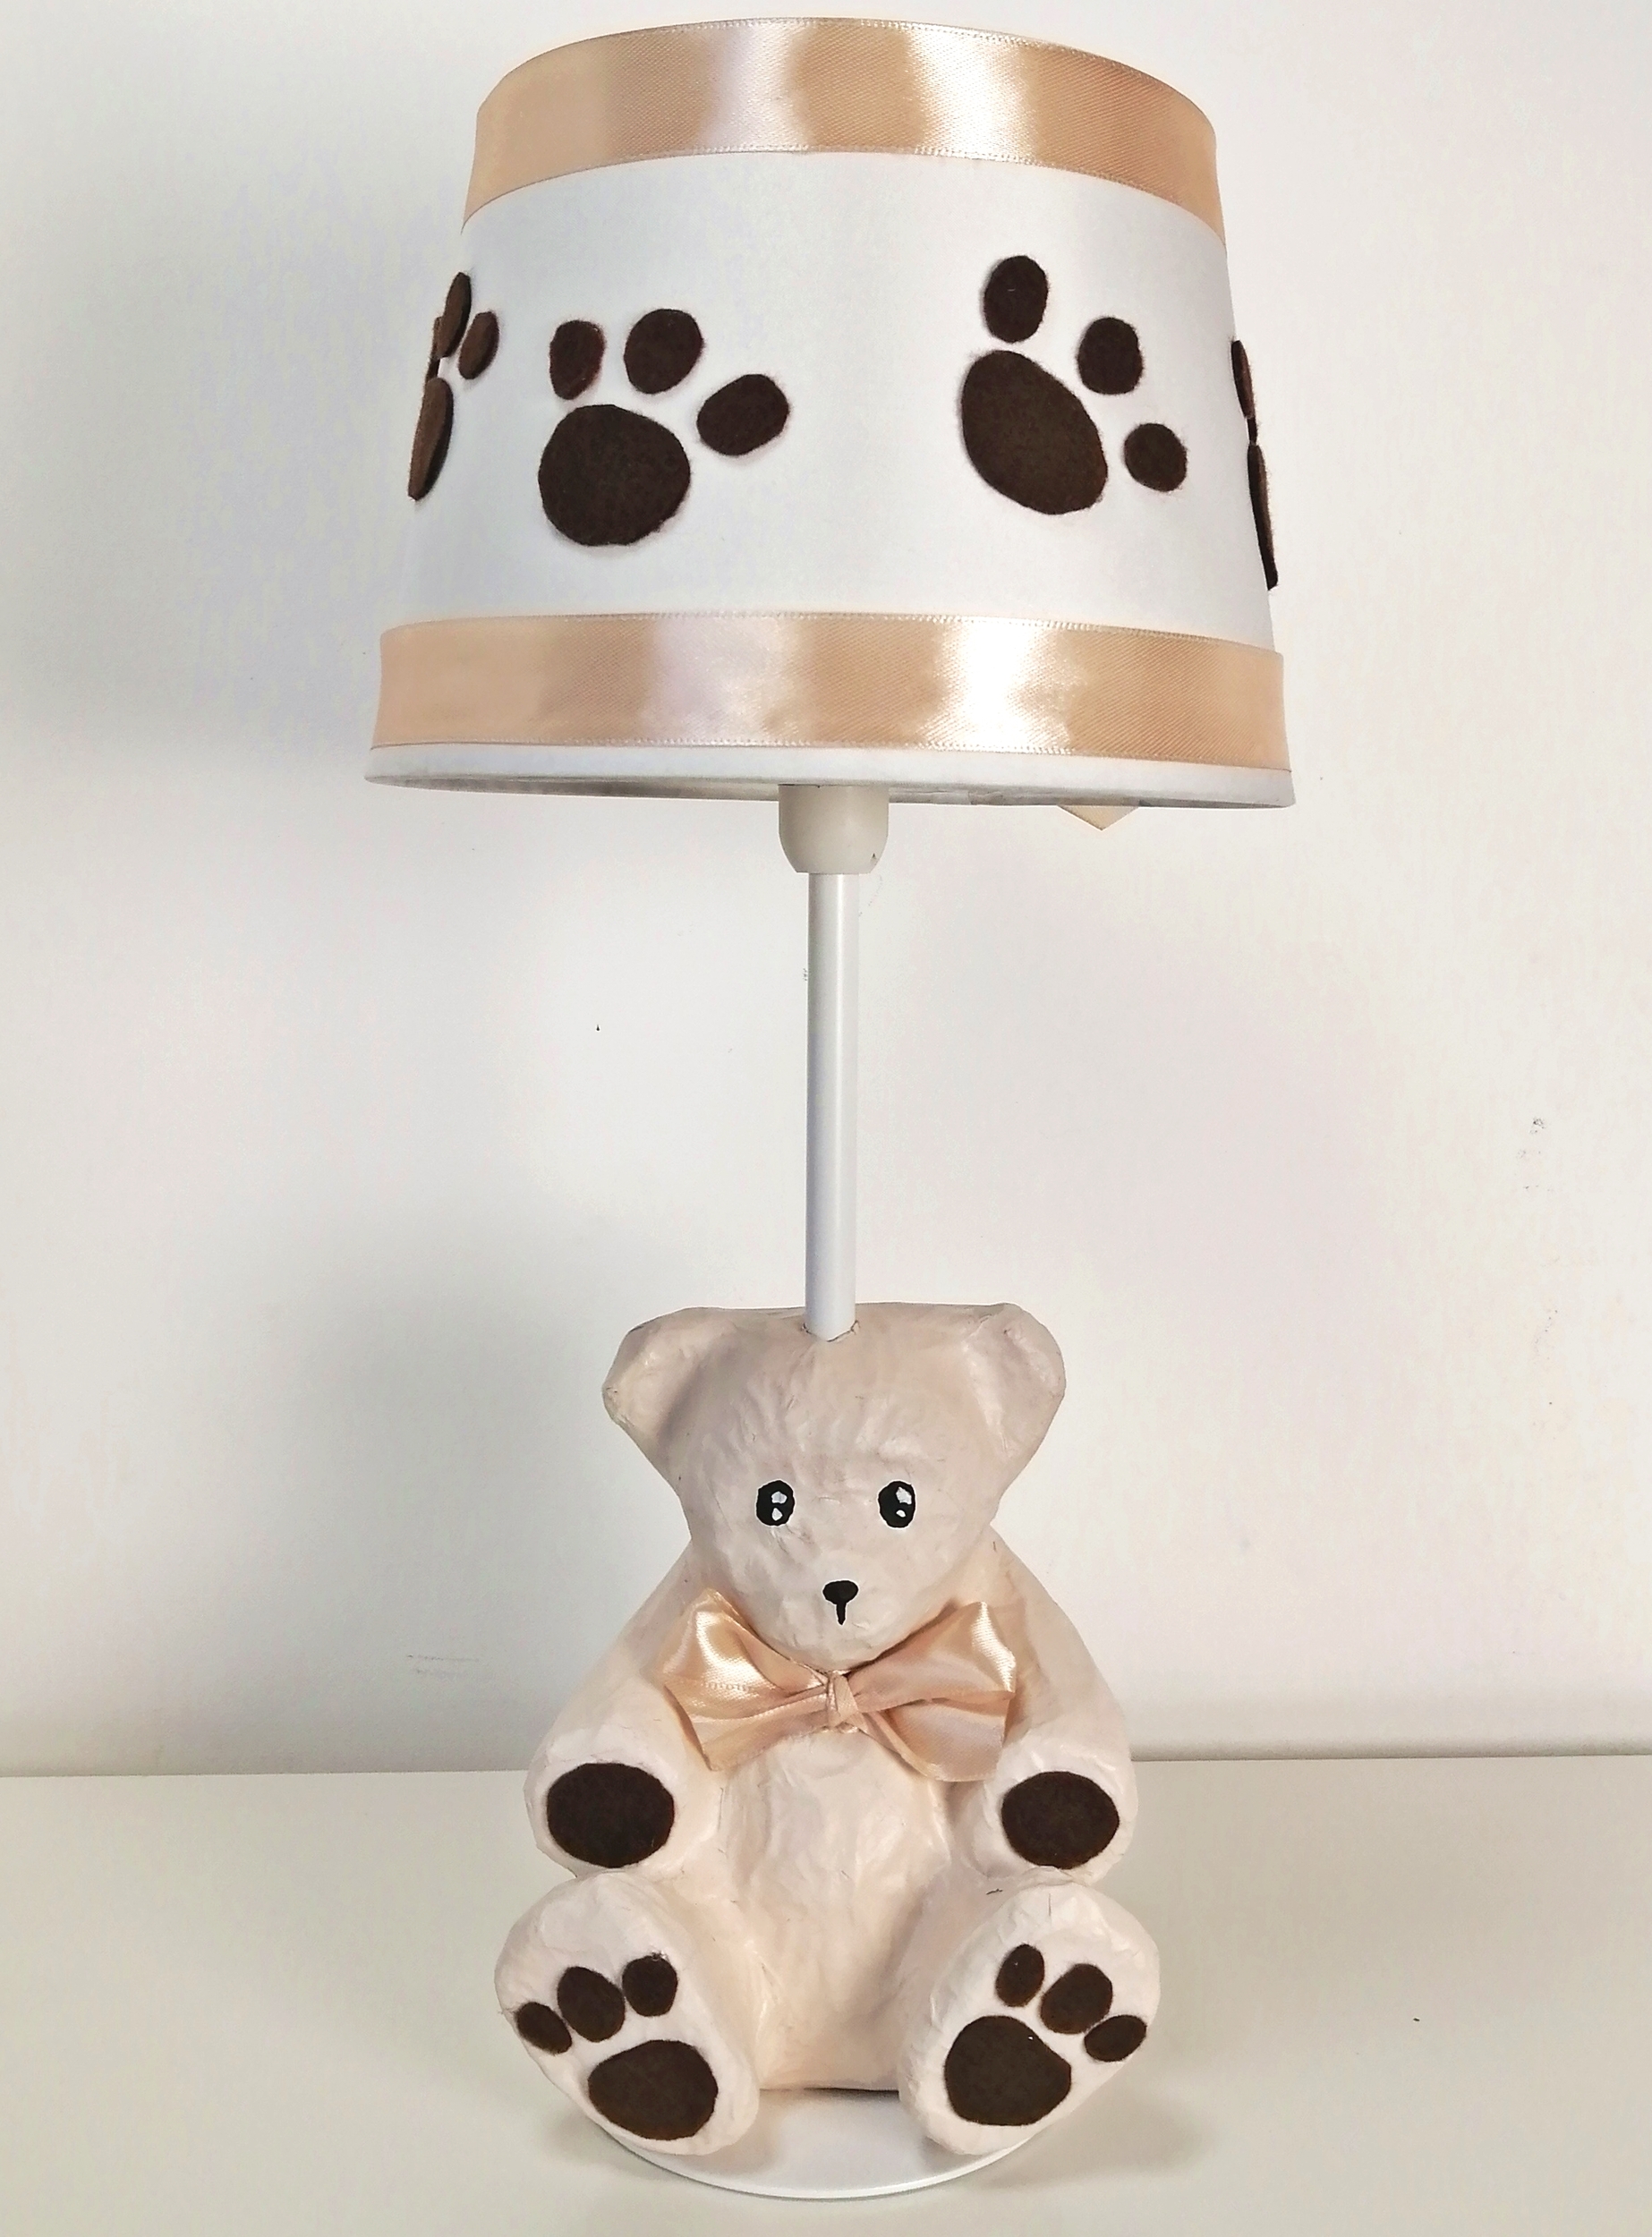 lampe-chevet-enfant-bebe-ours-marron-chocolat-beige-noisette-forme-ours-decoration-chambre